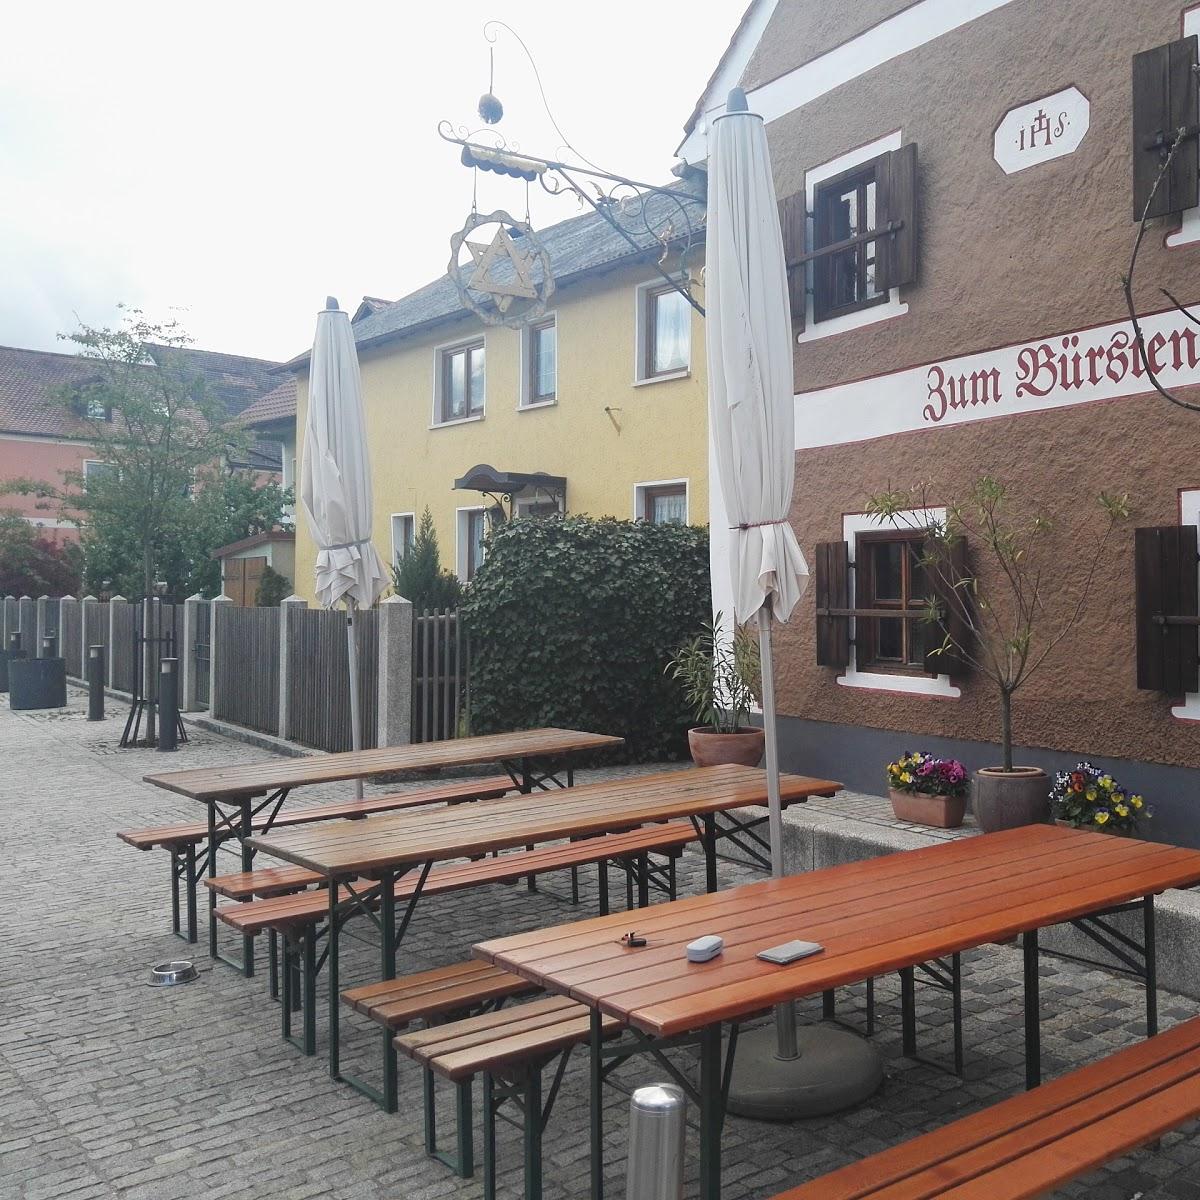 Restaurant "Zum Weißen Rössl" in  Kallmünz